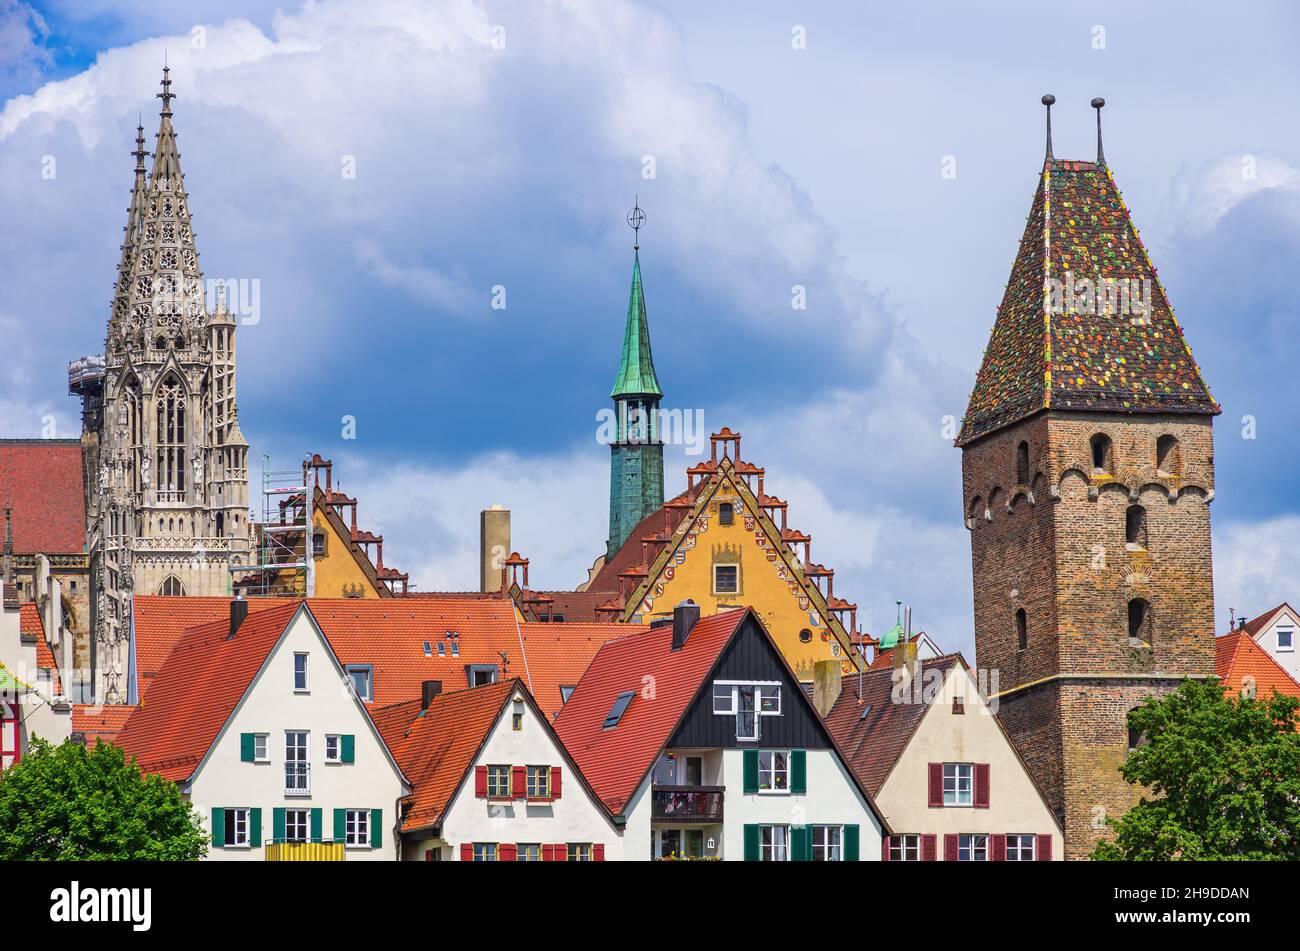 Ulm, Baden-Württemberg, Germania: Le case storiche del quartiere dei pescatori, le mura della città vecchia, la Torre Pendente e la Minster. Foto Stock